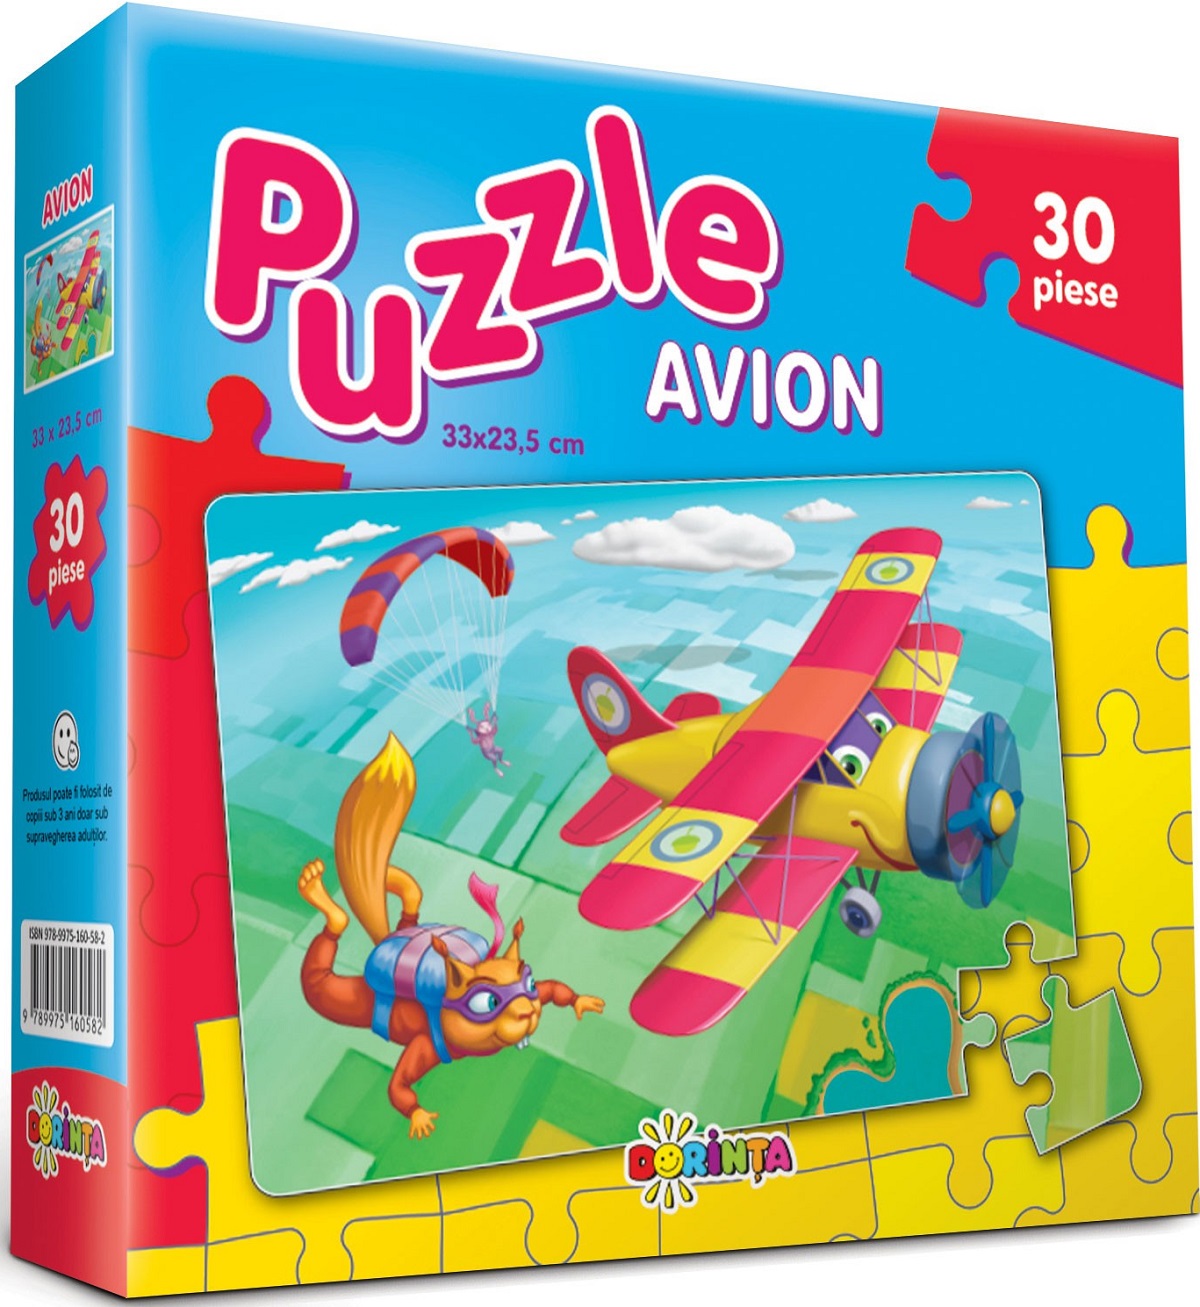 Puzzle 30. Avion